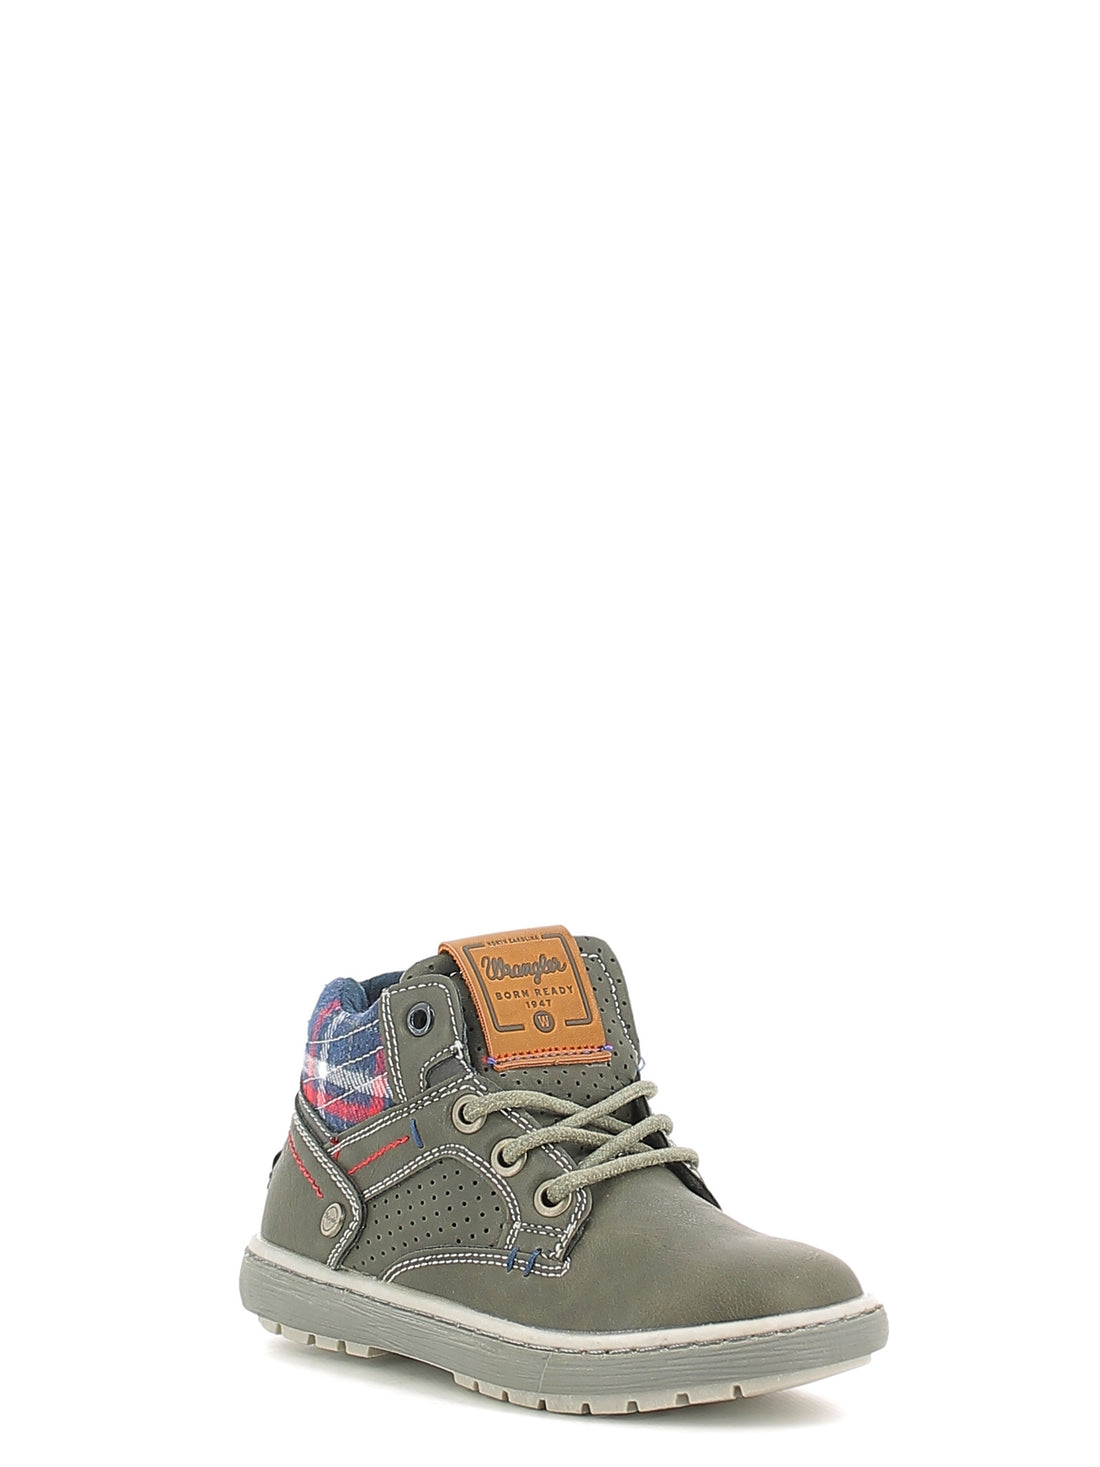 Sneakers Grigio W0096 Wrangler